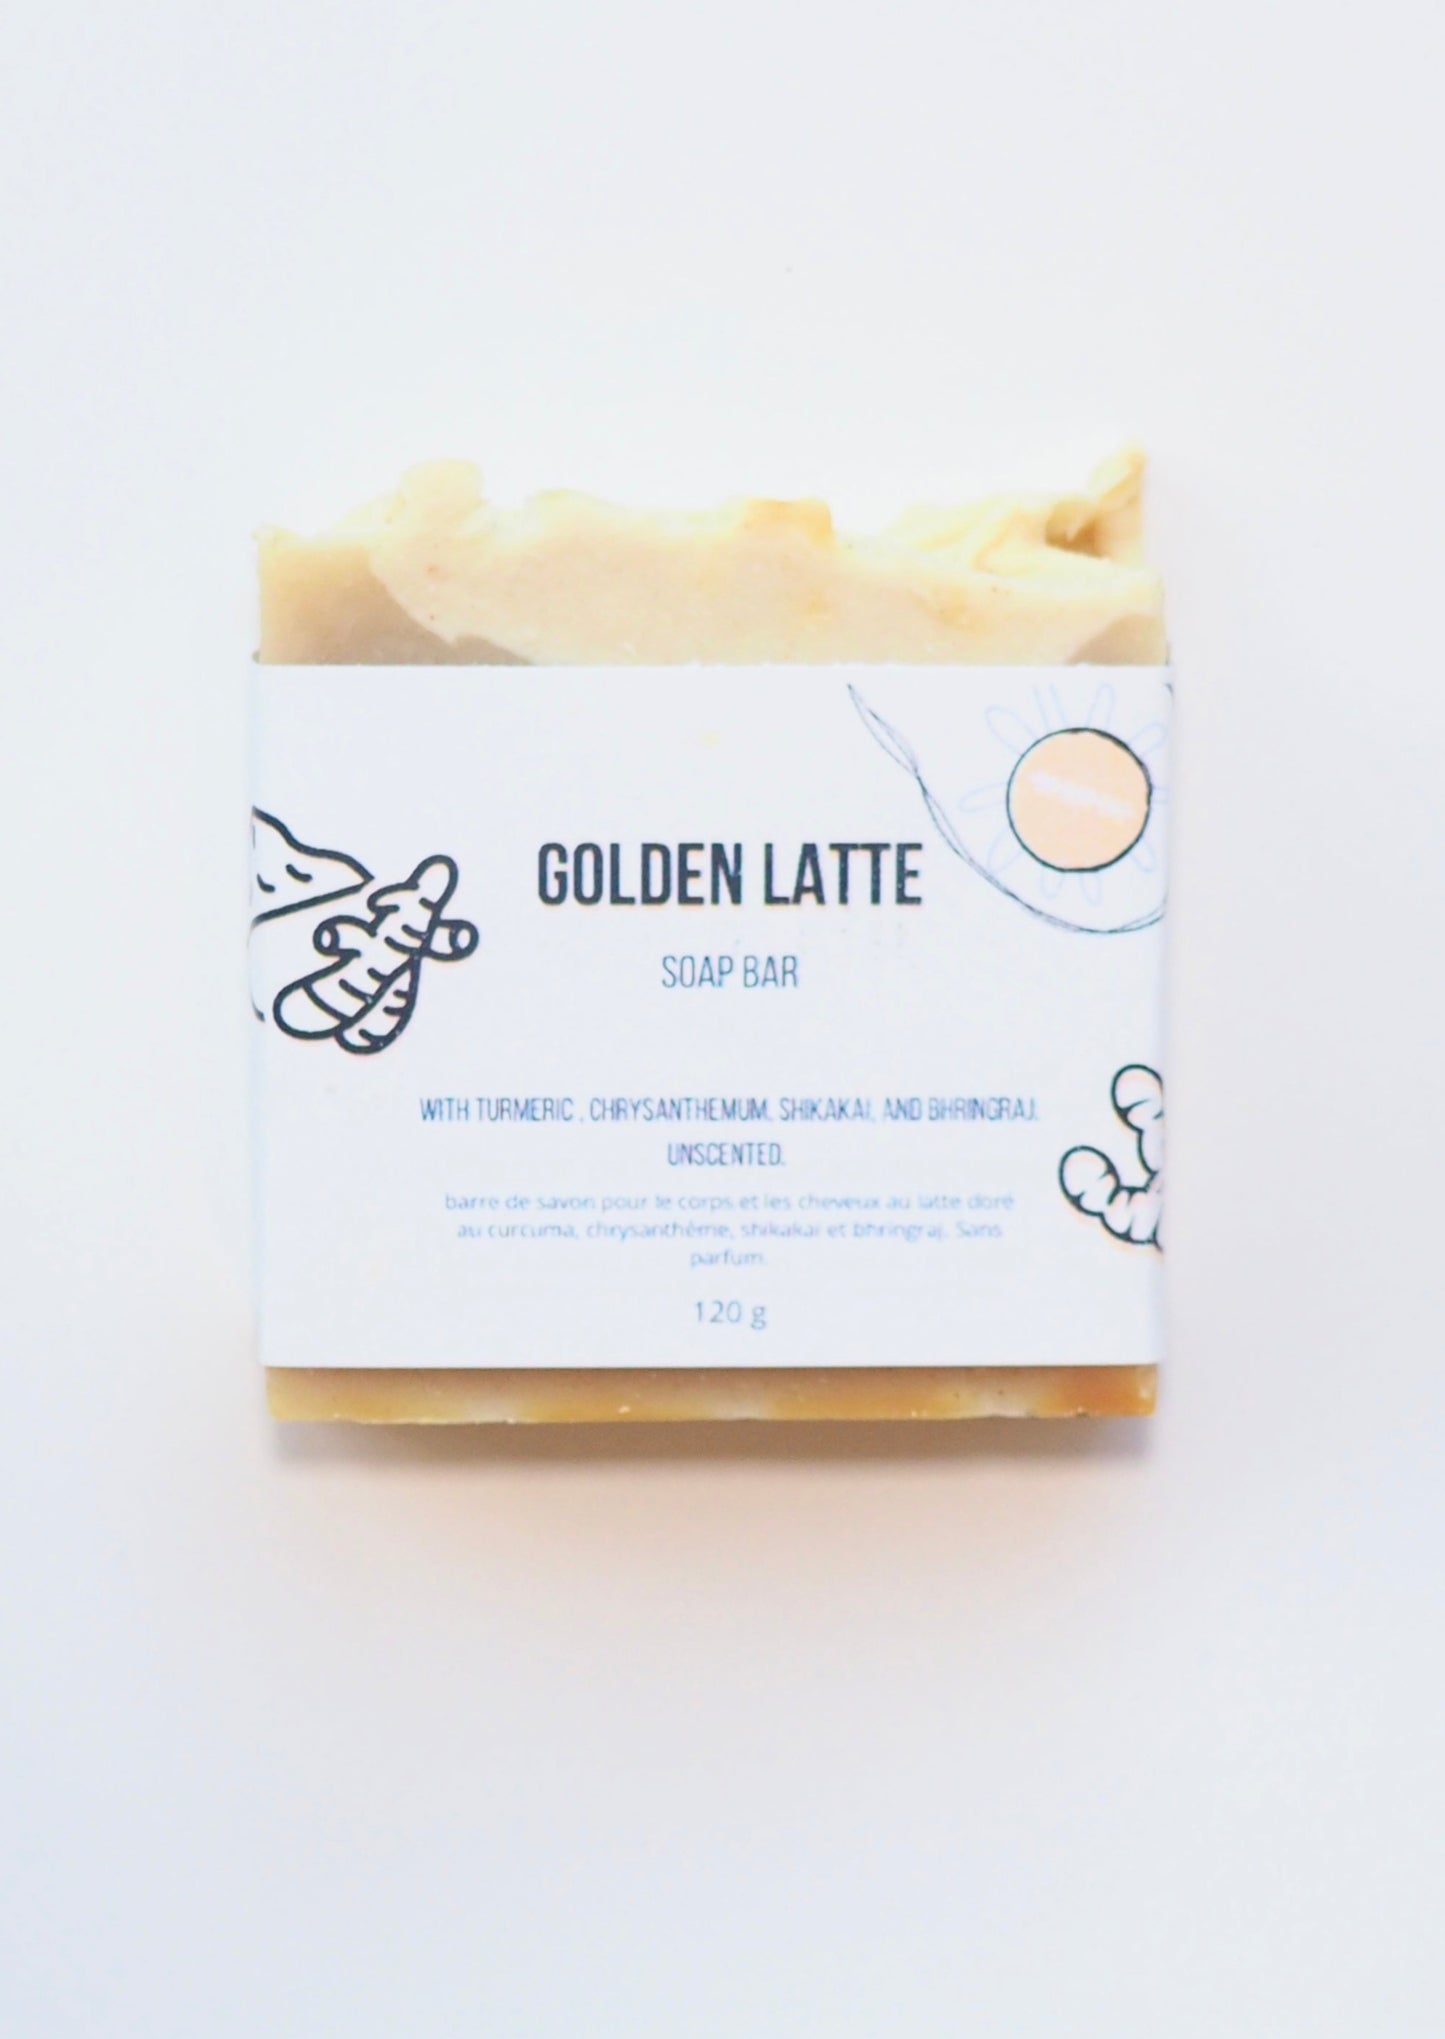 Do Not Eat: Golden Latte Soap Bar